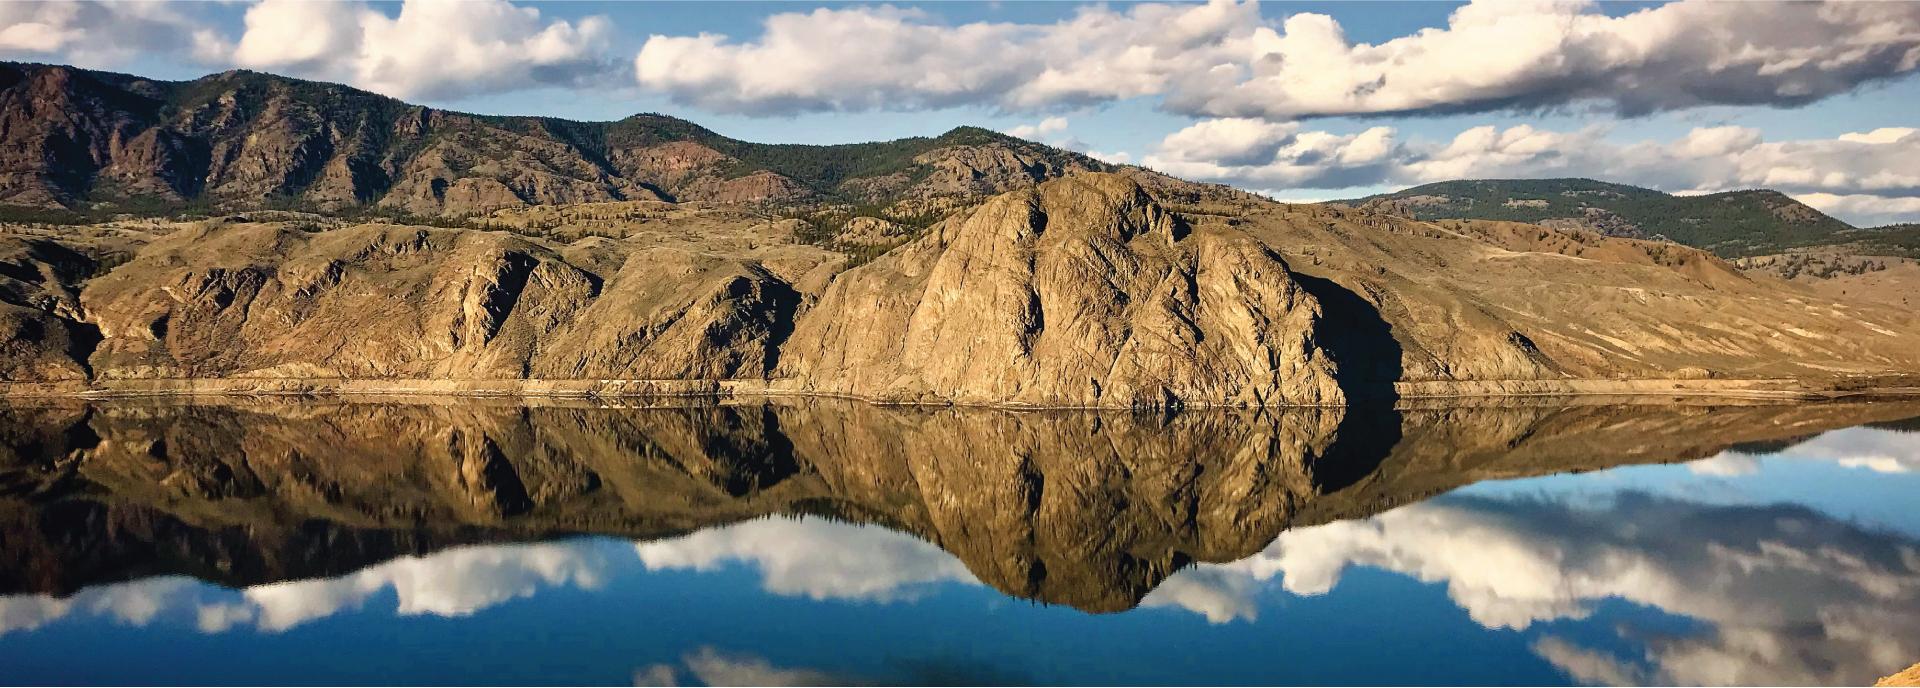 Kamloops Lake Reflection